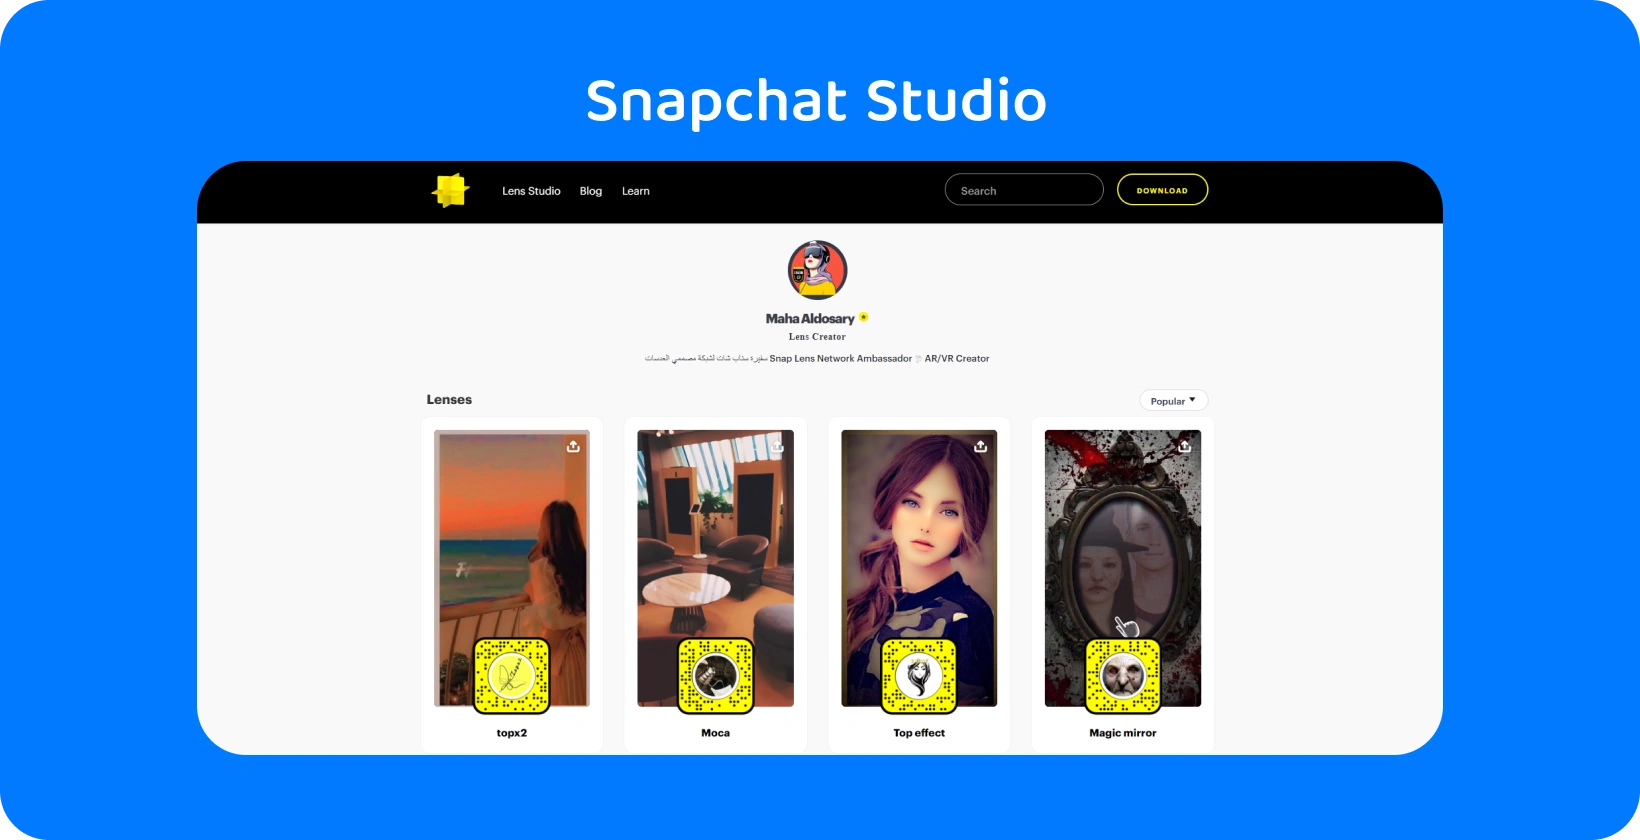 Snapchatアプリを表示しているスマートフォン、ノートブック、ペン、イヤホンに囲まれています。